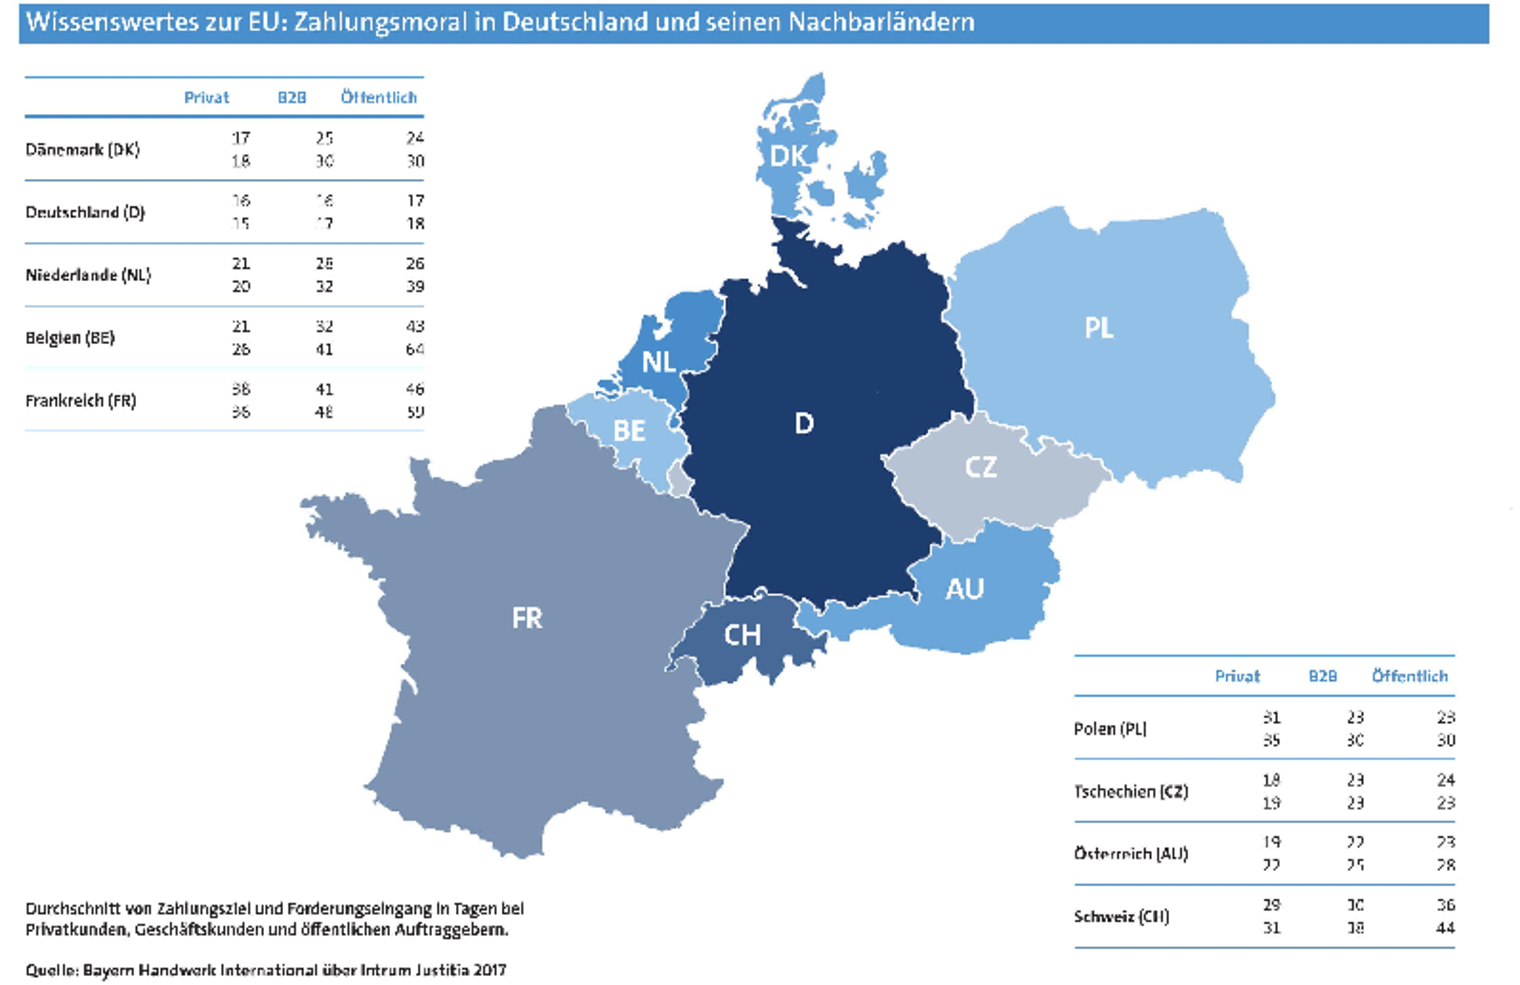 ##Wissenswertes zur EU Zahlungsmoral in Deutschland und seinen Nachbarländern